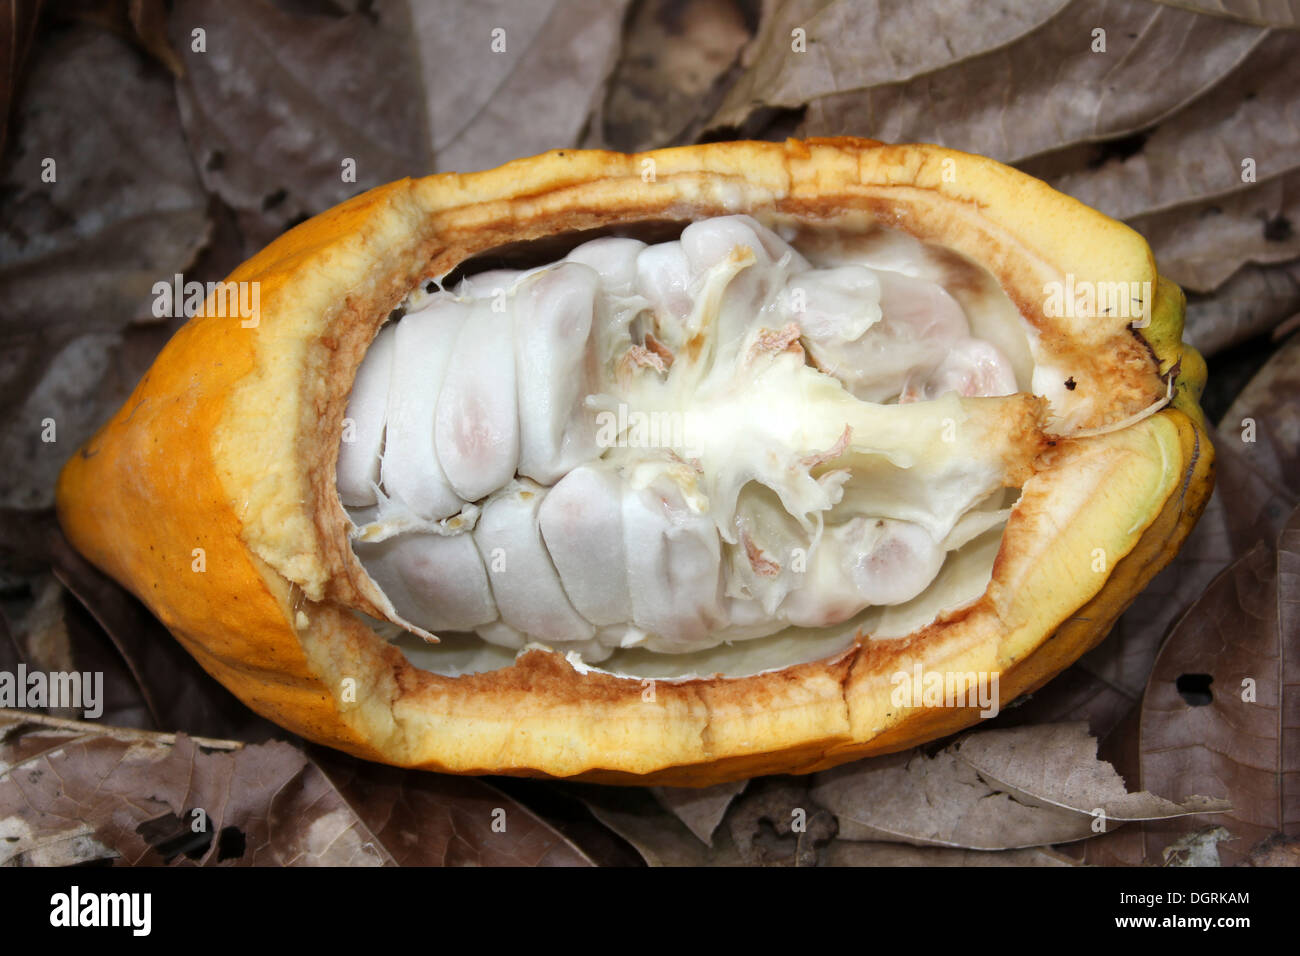 Les cabosses de cacao exposés montrant les haricots à l'intérieur Banque D'Images